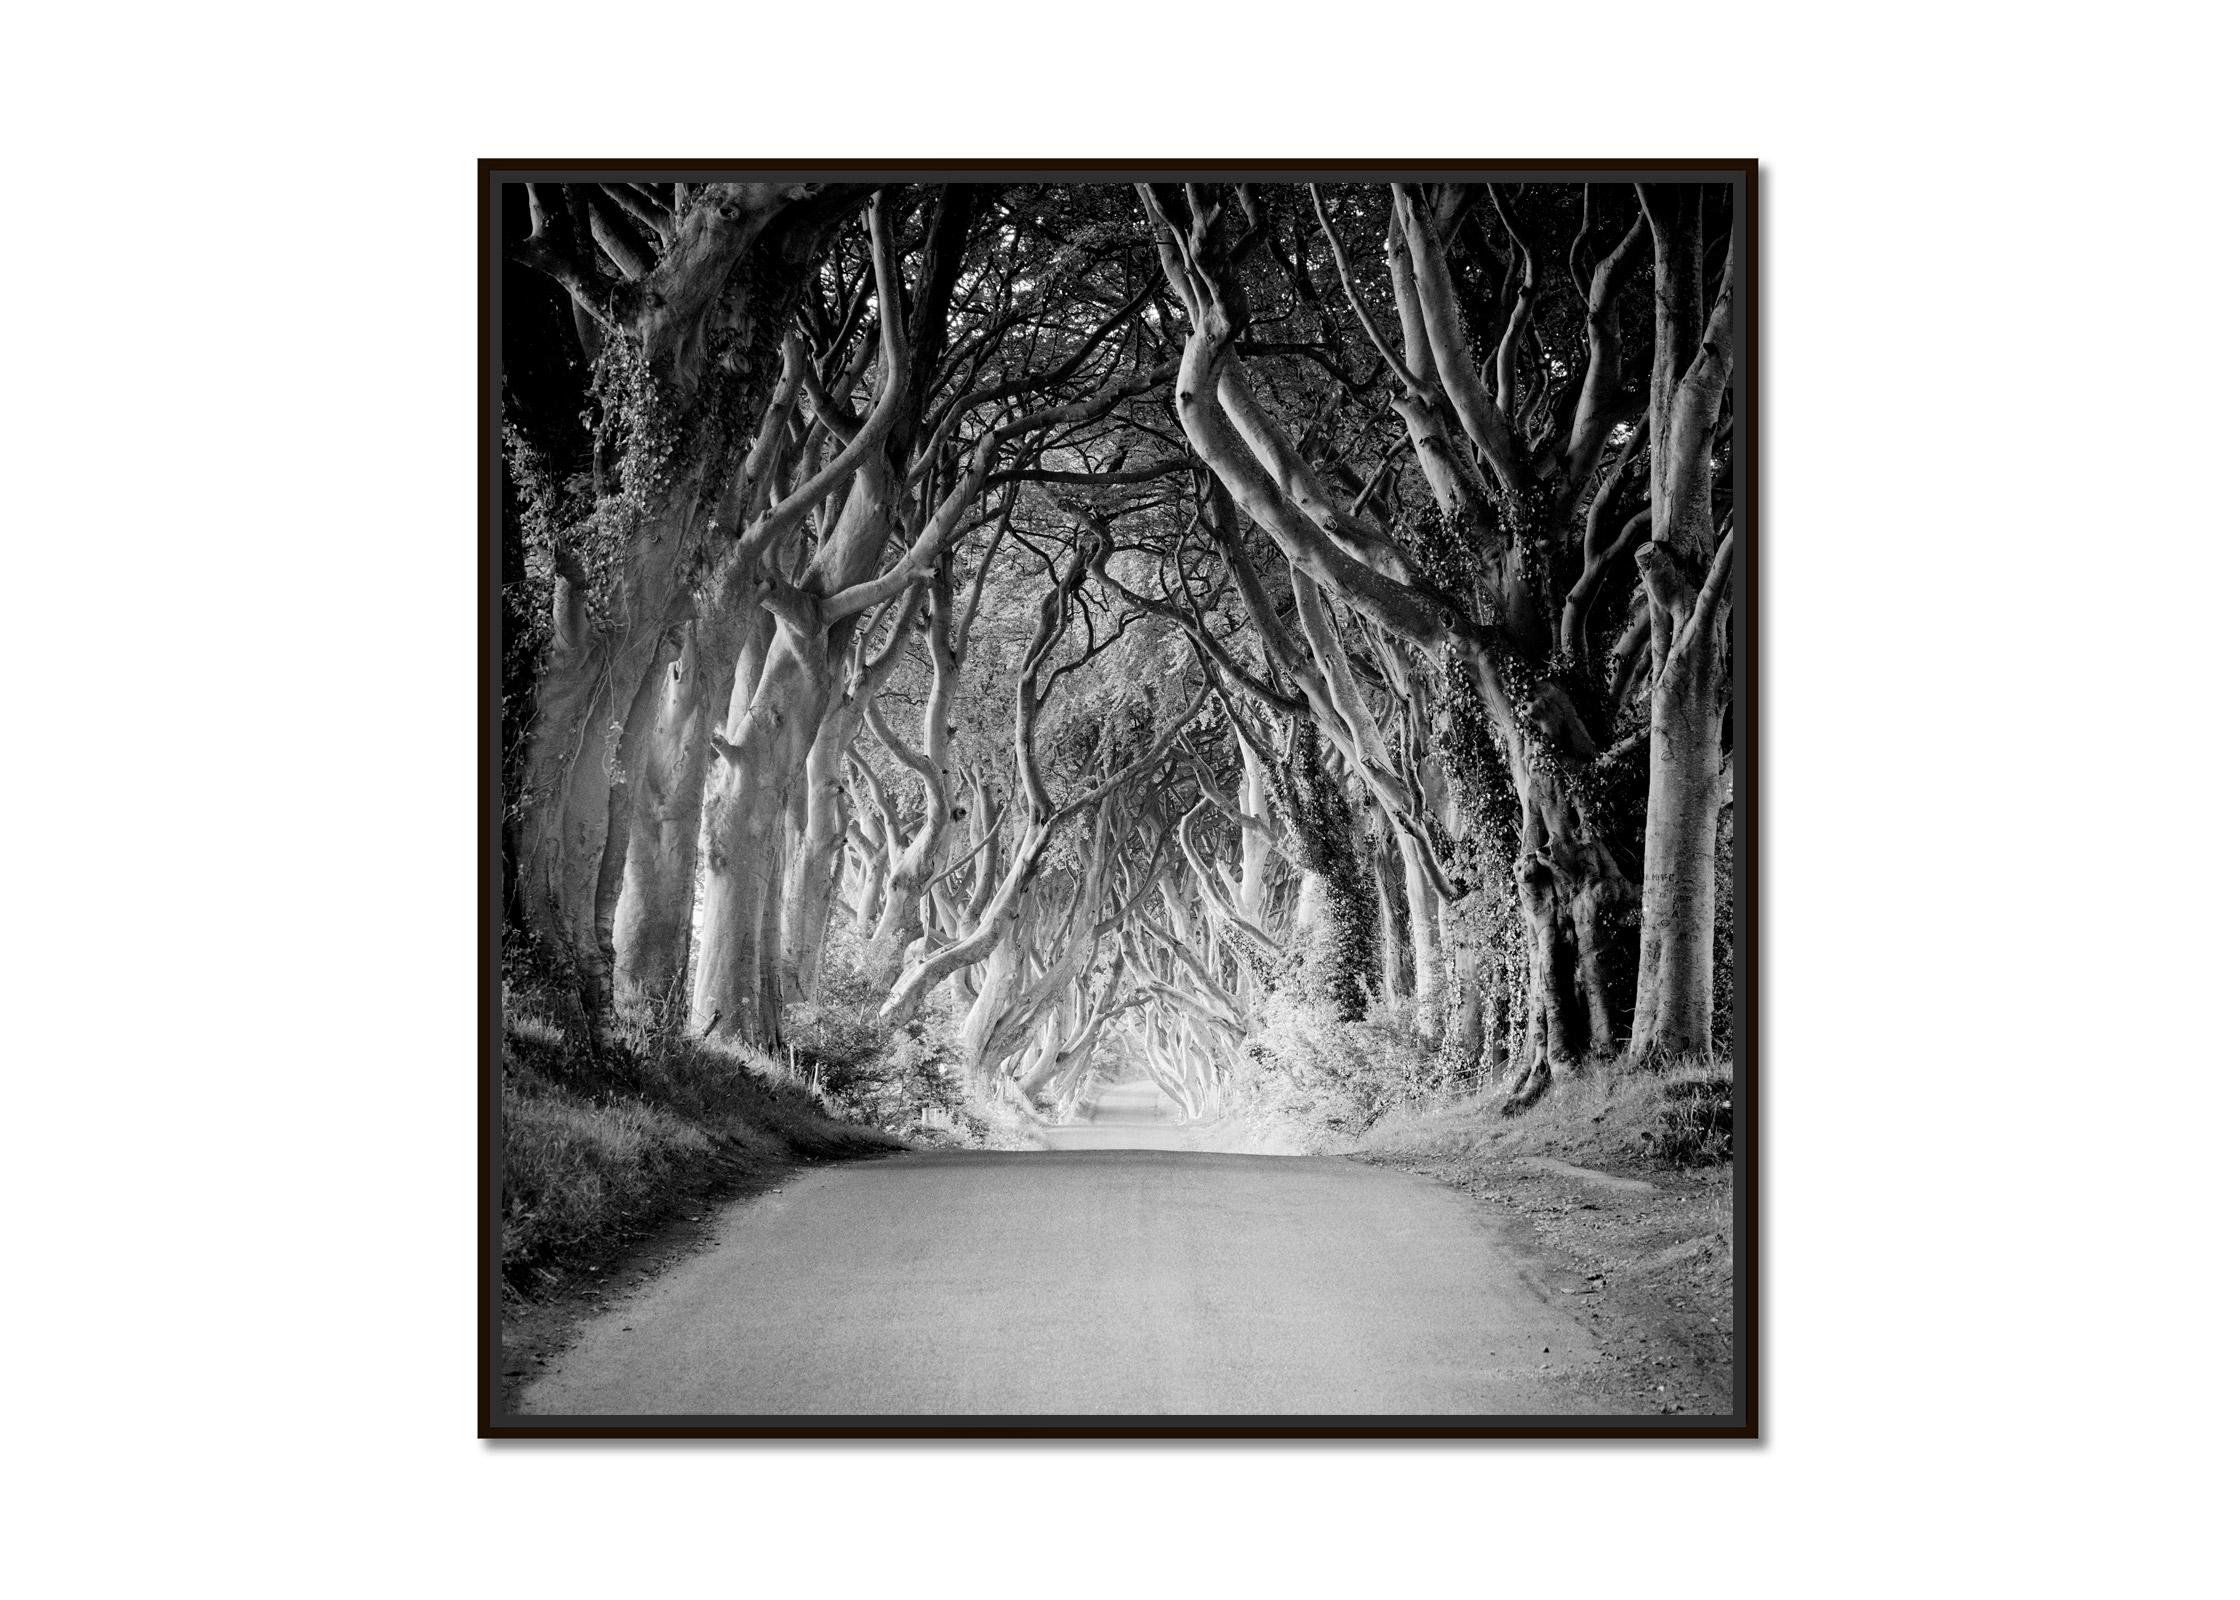 Dunkle Hecken, Irland, Buchenbaum-Avenue, Schwarz-Weiß-Landschaftsfotografie – Photograph von Gerald Berghammer